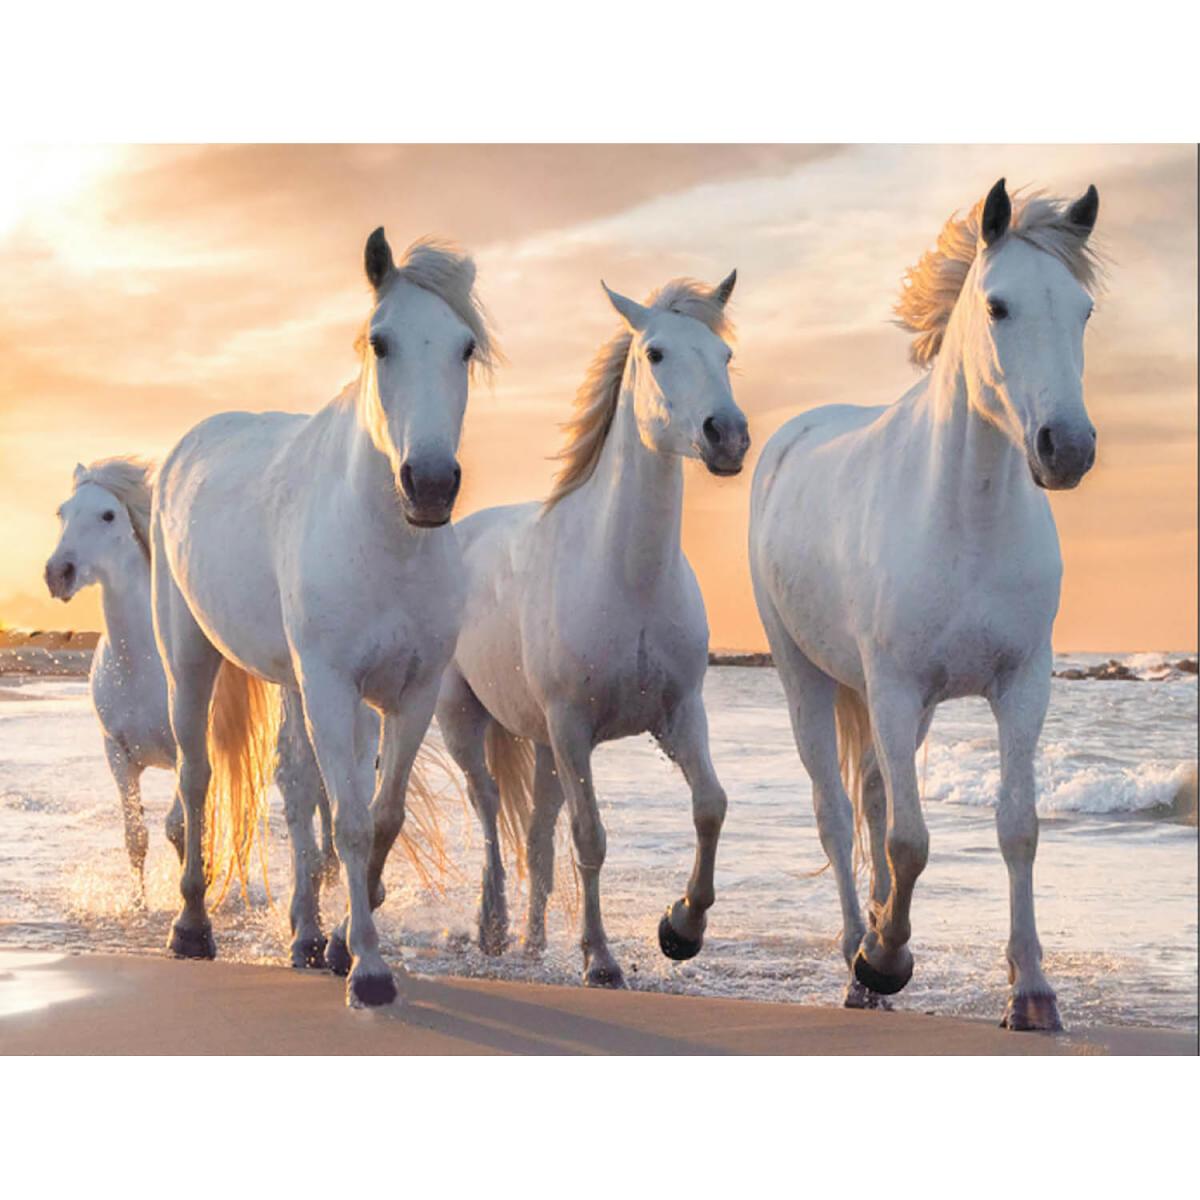 laukiniai balti arkliai zirgai papludymyje prie juros blizganciu deimantuku deliojamas  paveikslas dovana teciui sunui vaikinui seneliui anukui krikstasuniui broliui vaikinui